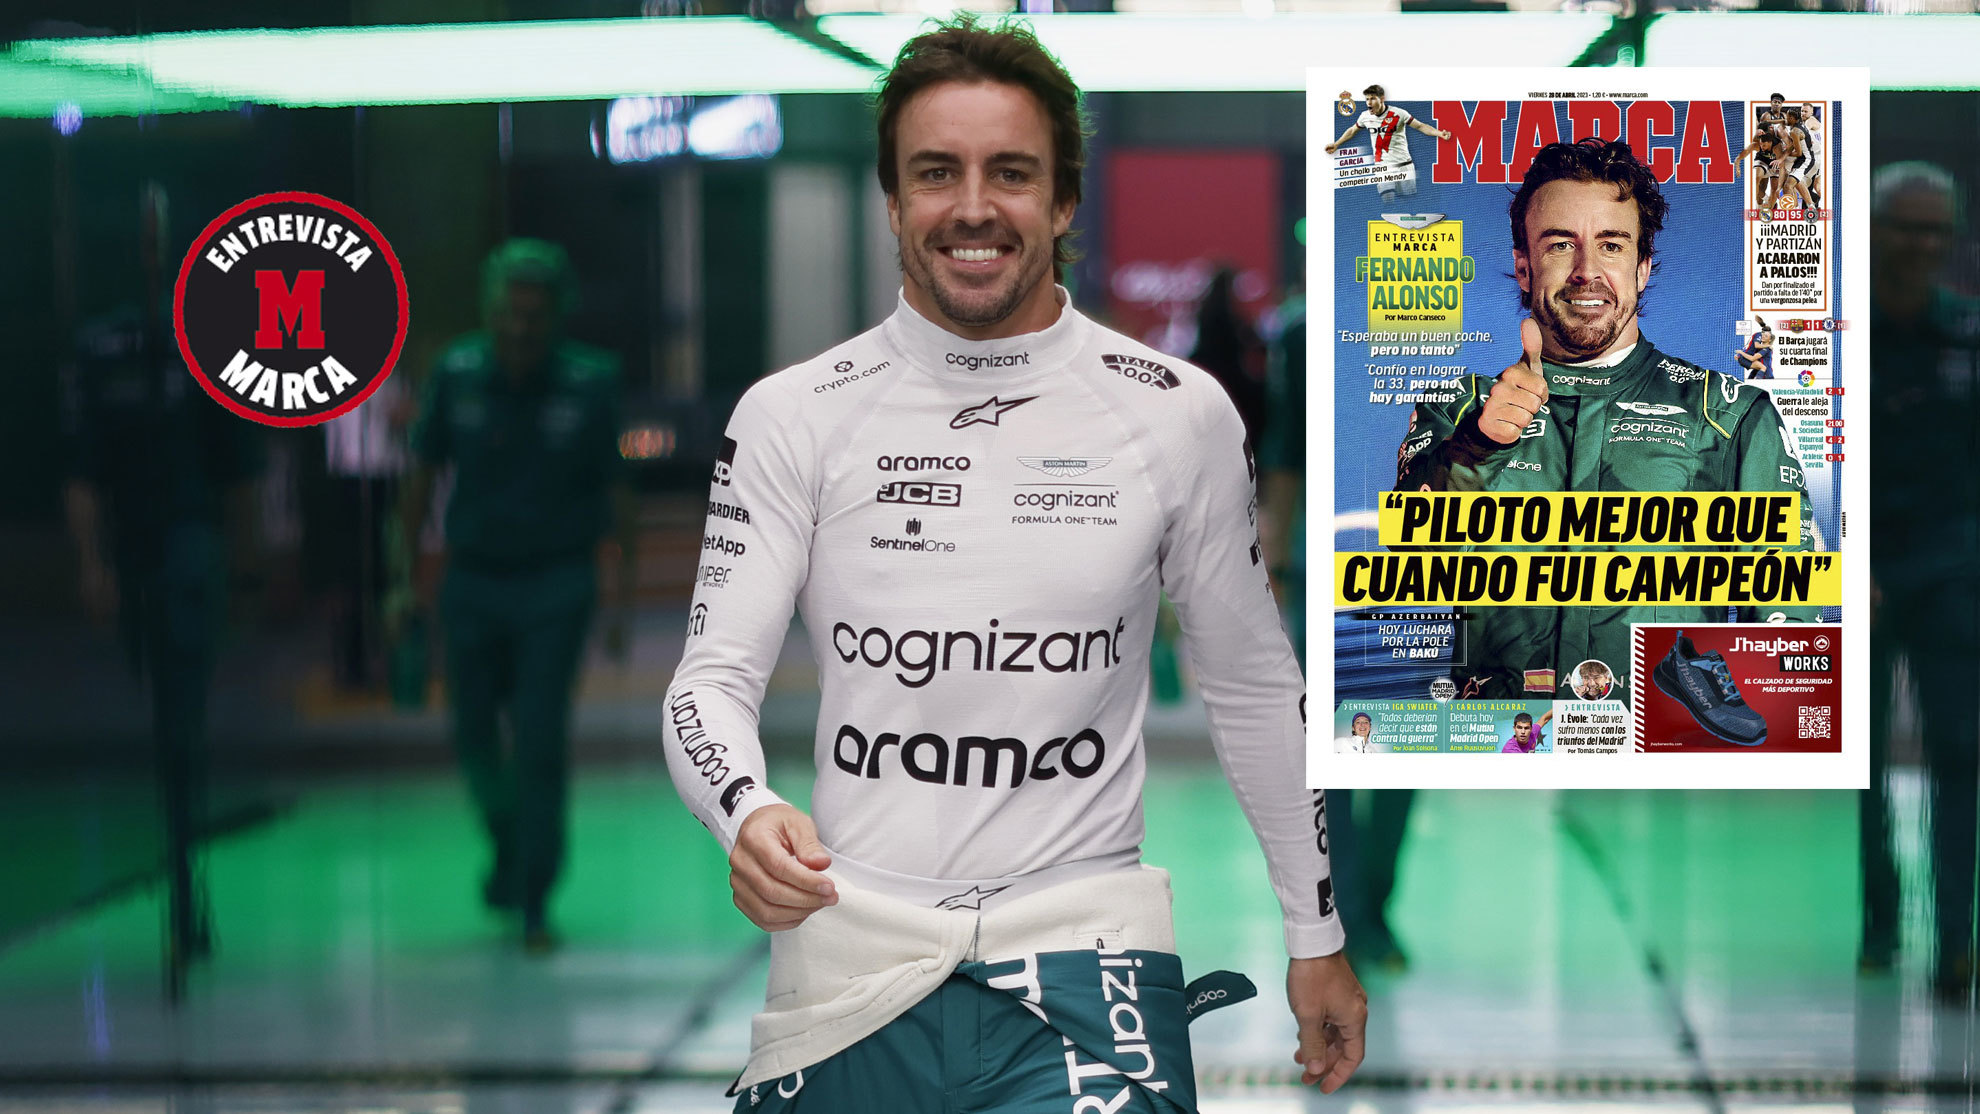 Fernando Alonso: "Piloto mejor que cuando fui campeón"